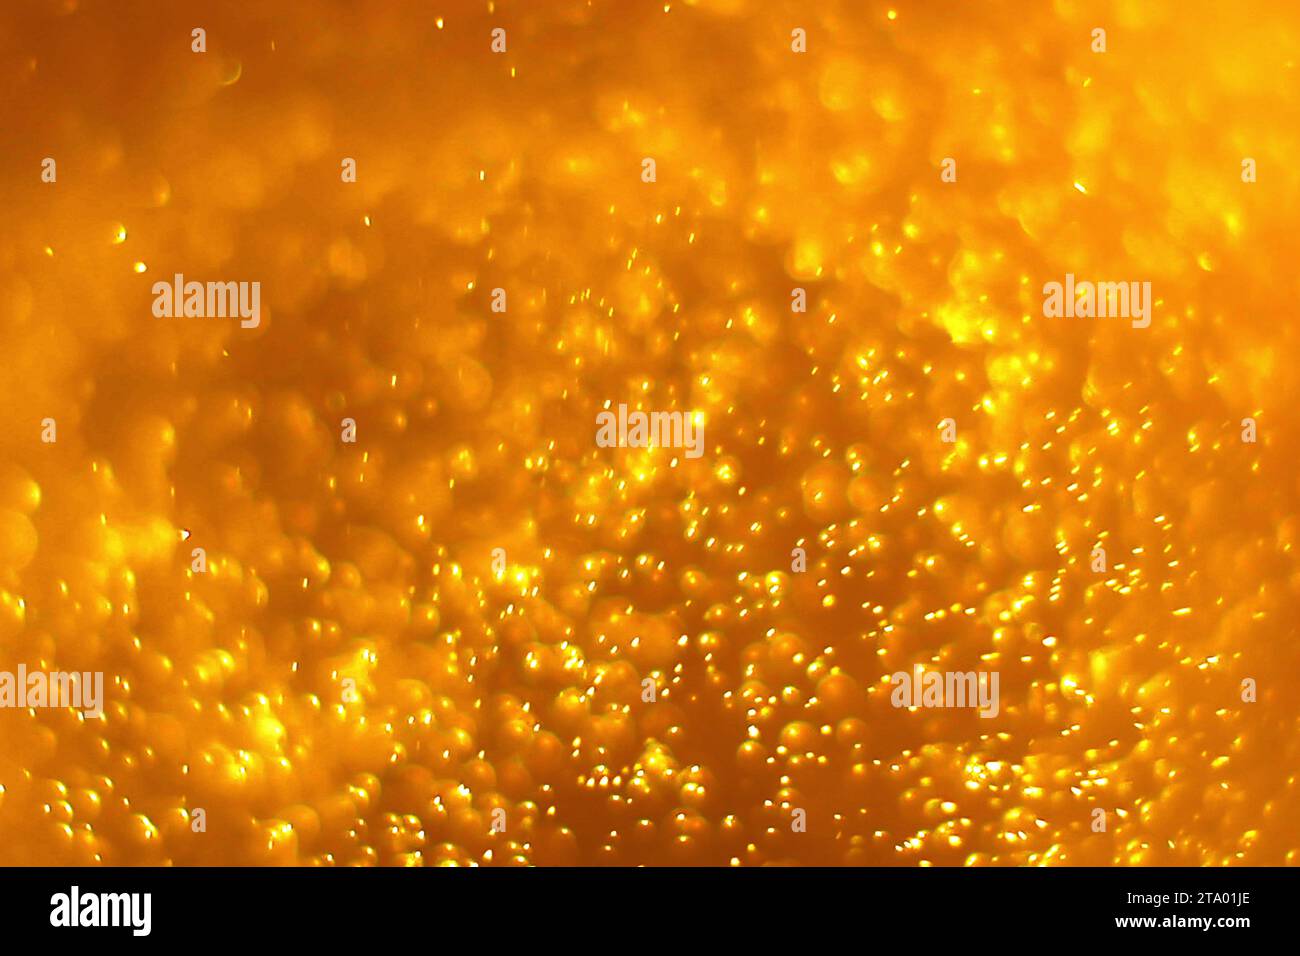 sfondo di particelle di polvere dorate con spot luminoso dorato Foto Stock